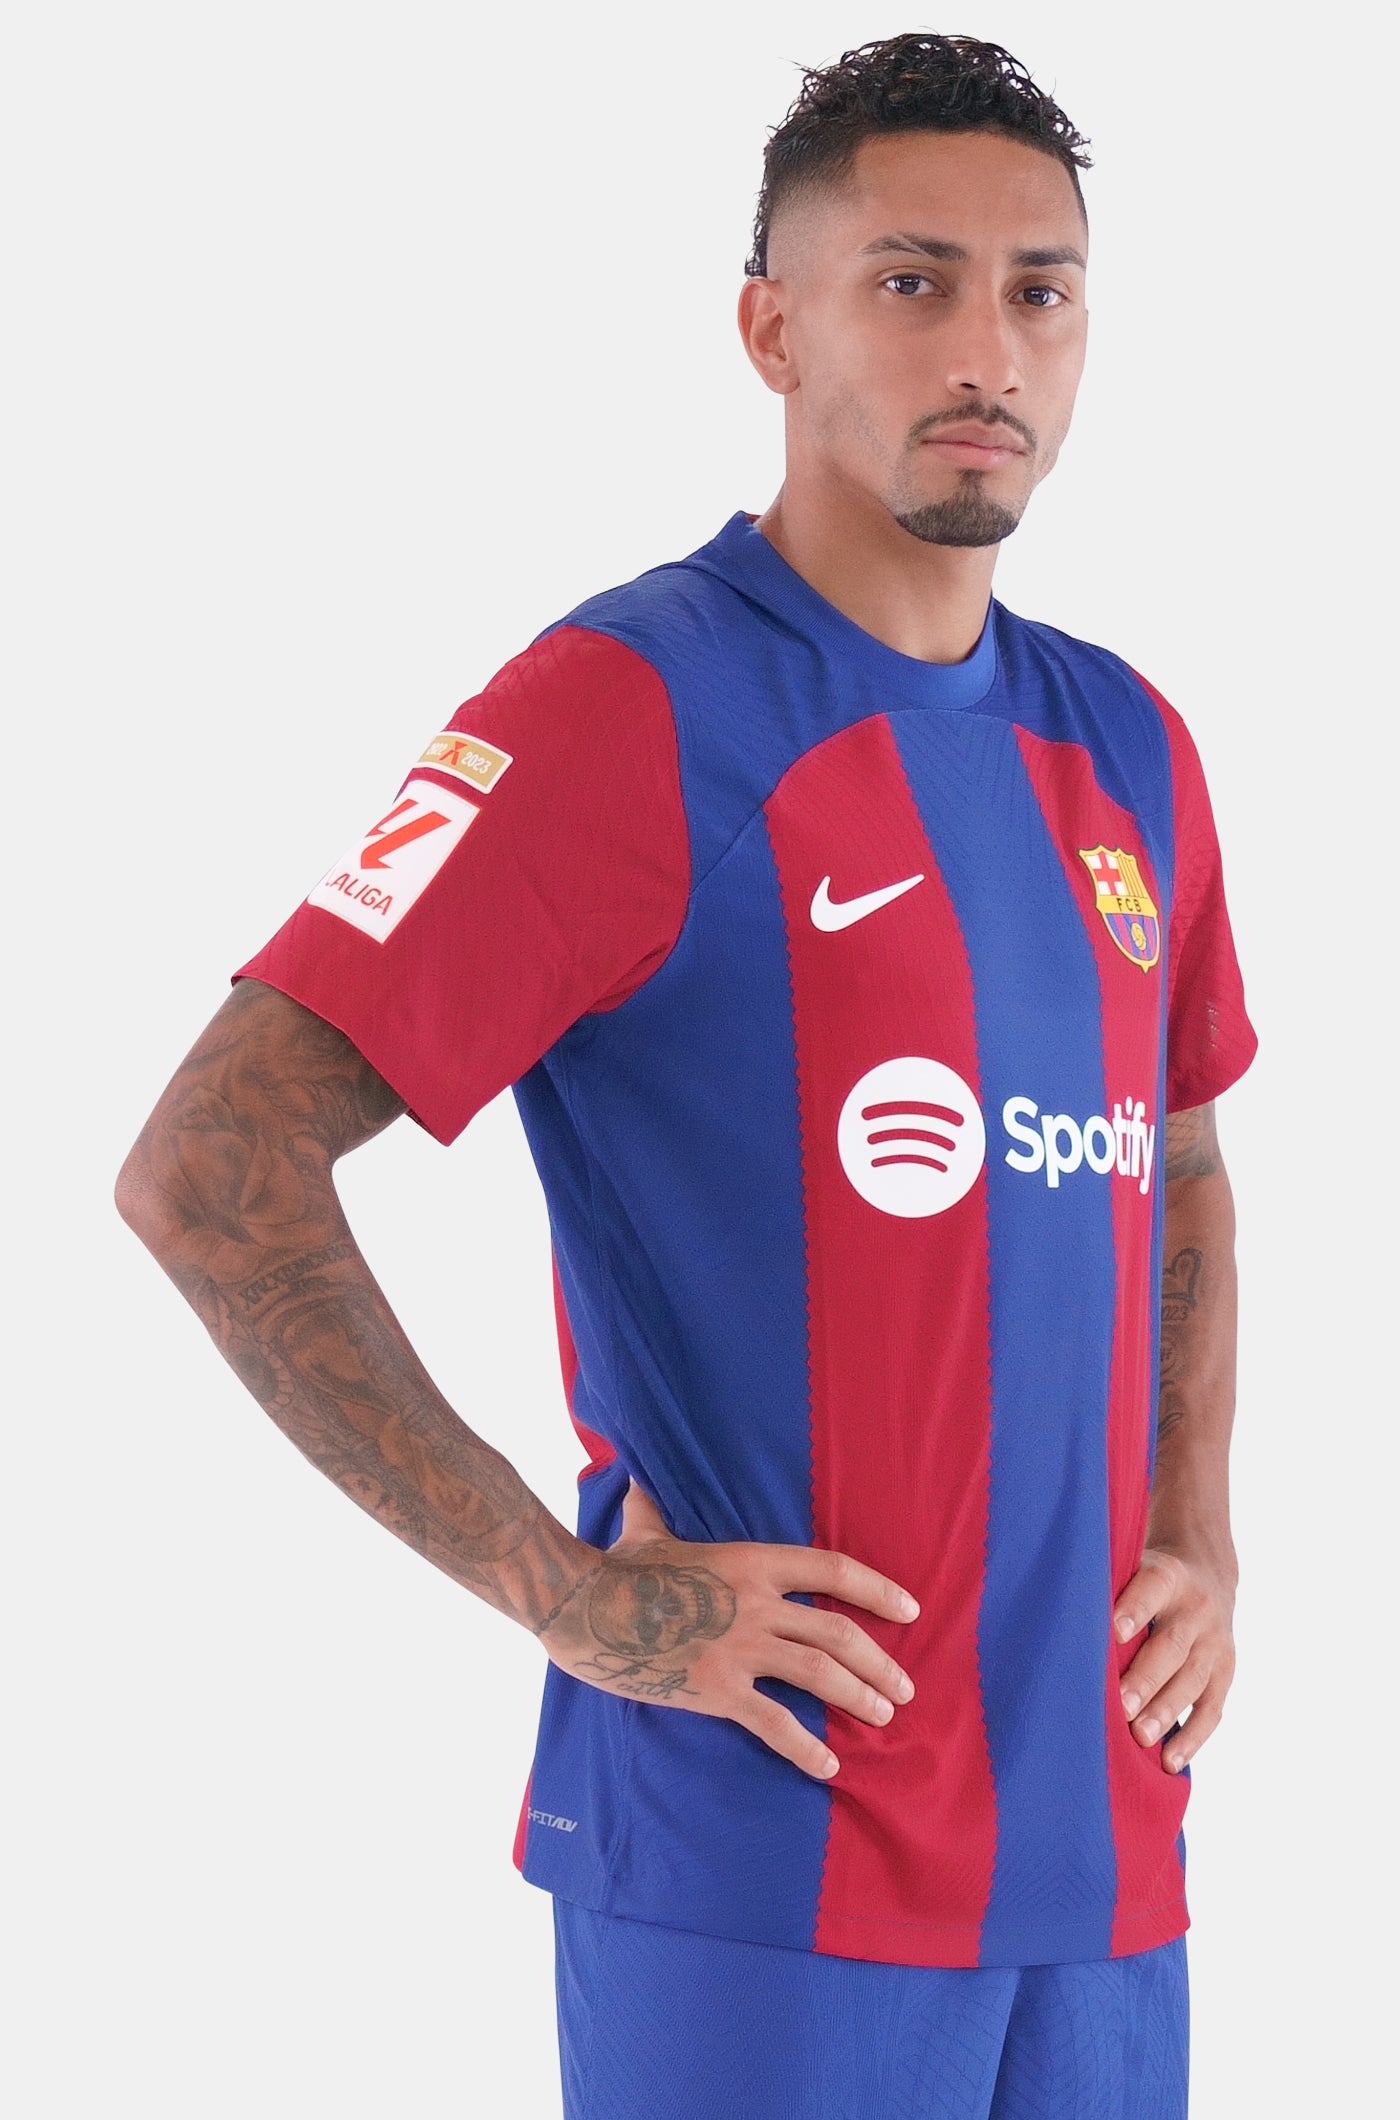 LFP FC Barcelona home shirt 23/24 Player's Edition - RAPHINHA